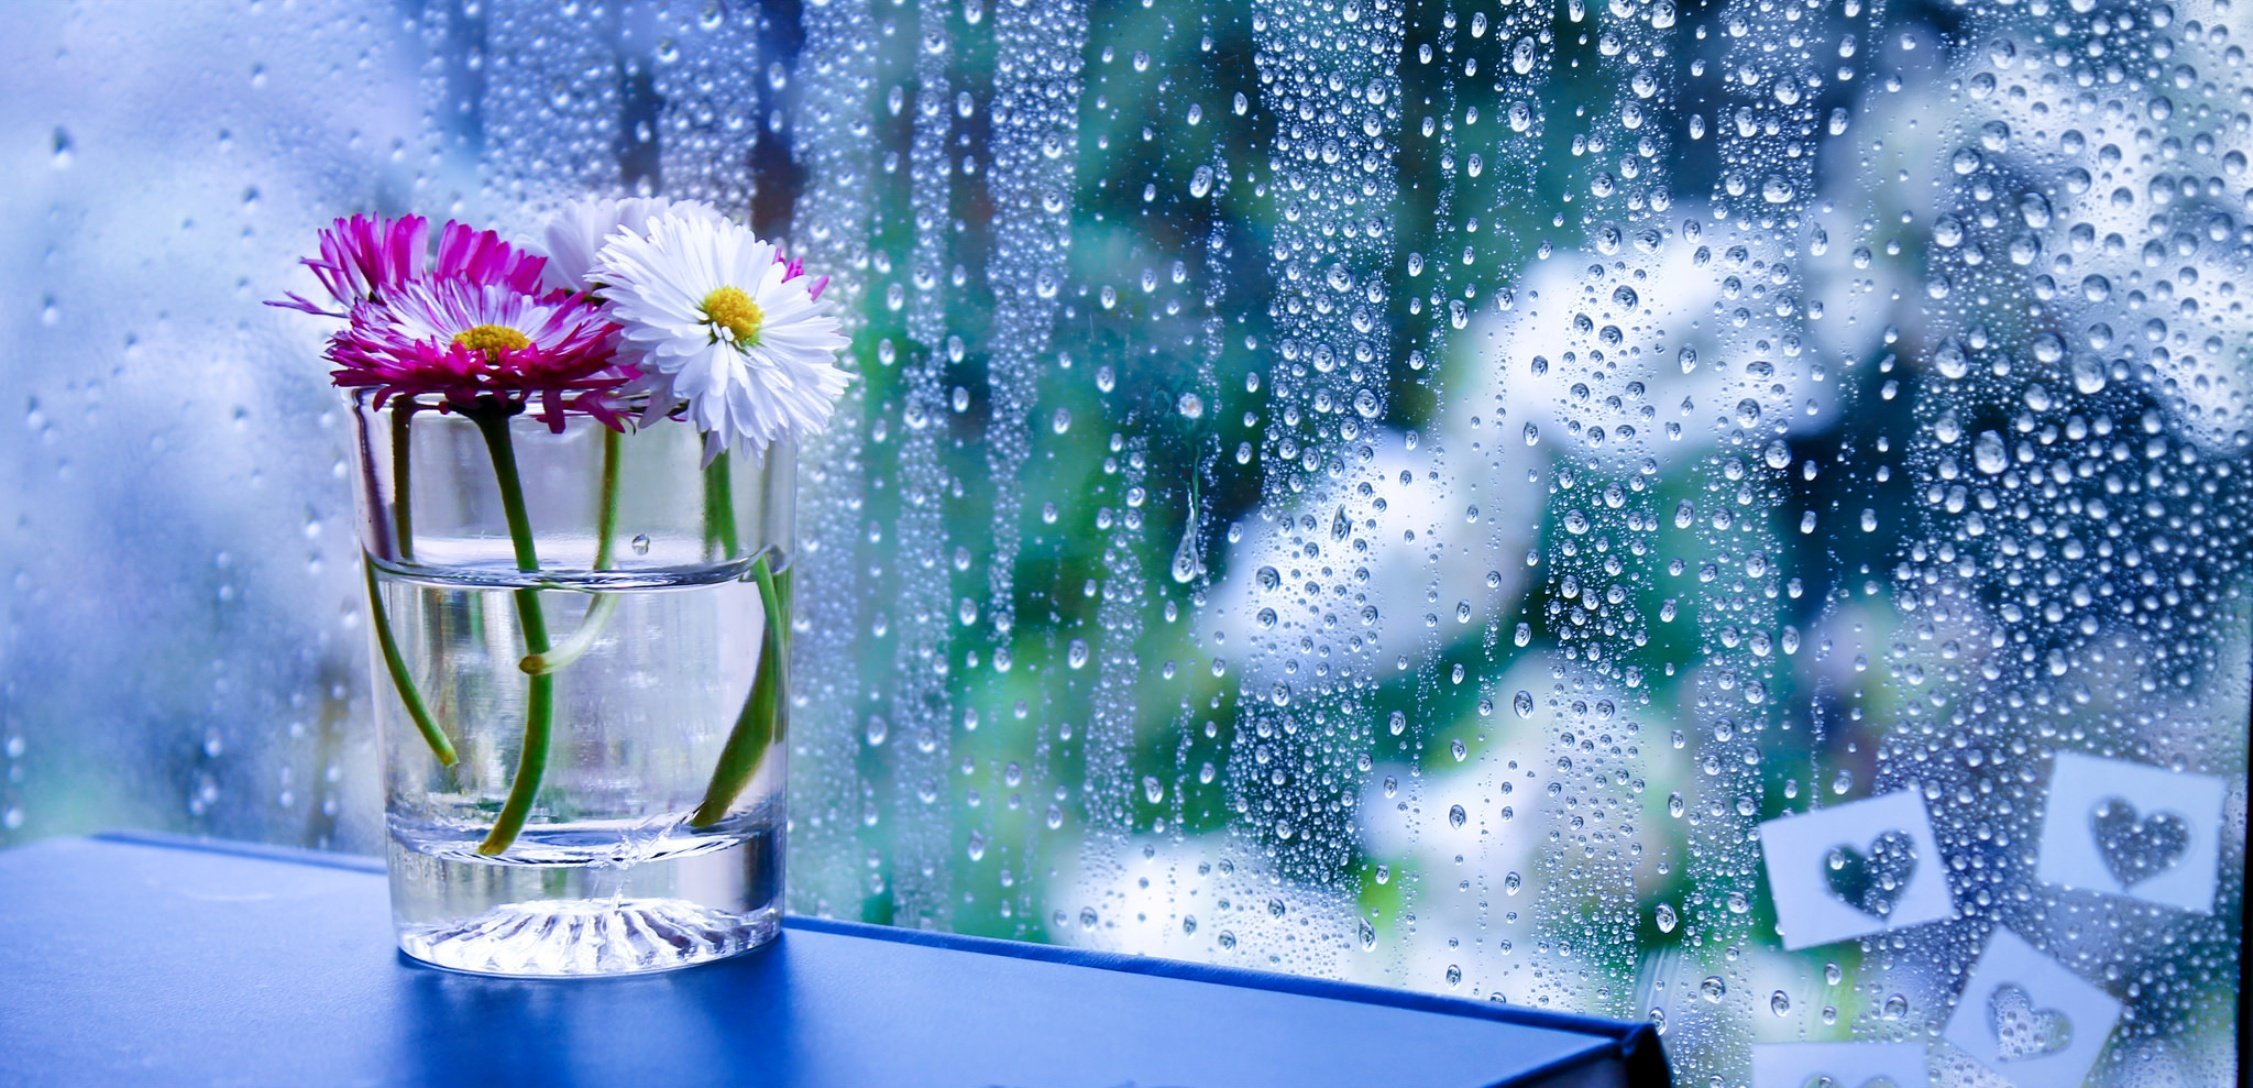 flowers in rain hd wallpapers,water,flower,plant,glass,wildflower